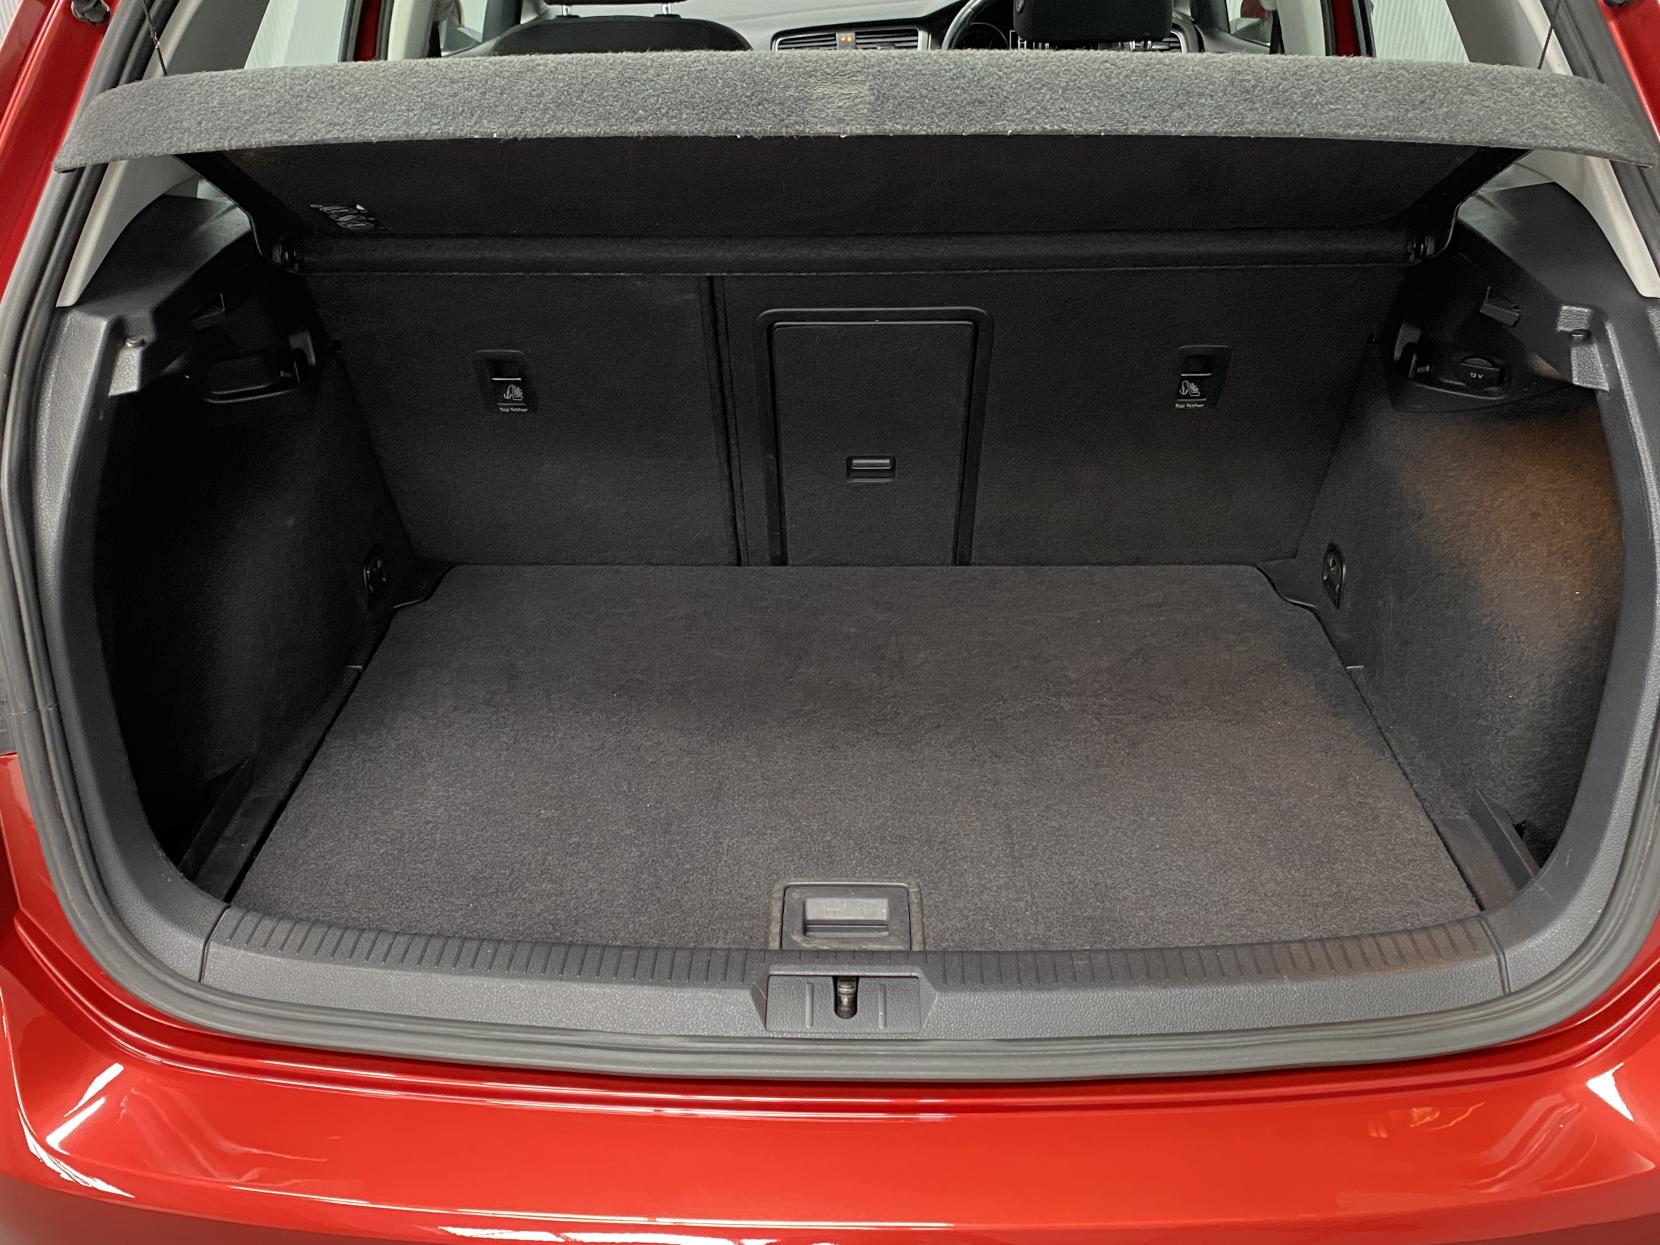 Volkswagen Golf 1.6 TDI BlueMotion Tech SE Hatchback 5dr Diesel Manual Euro 5 (s/s) (105 ps)